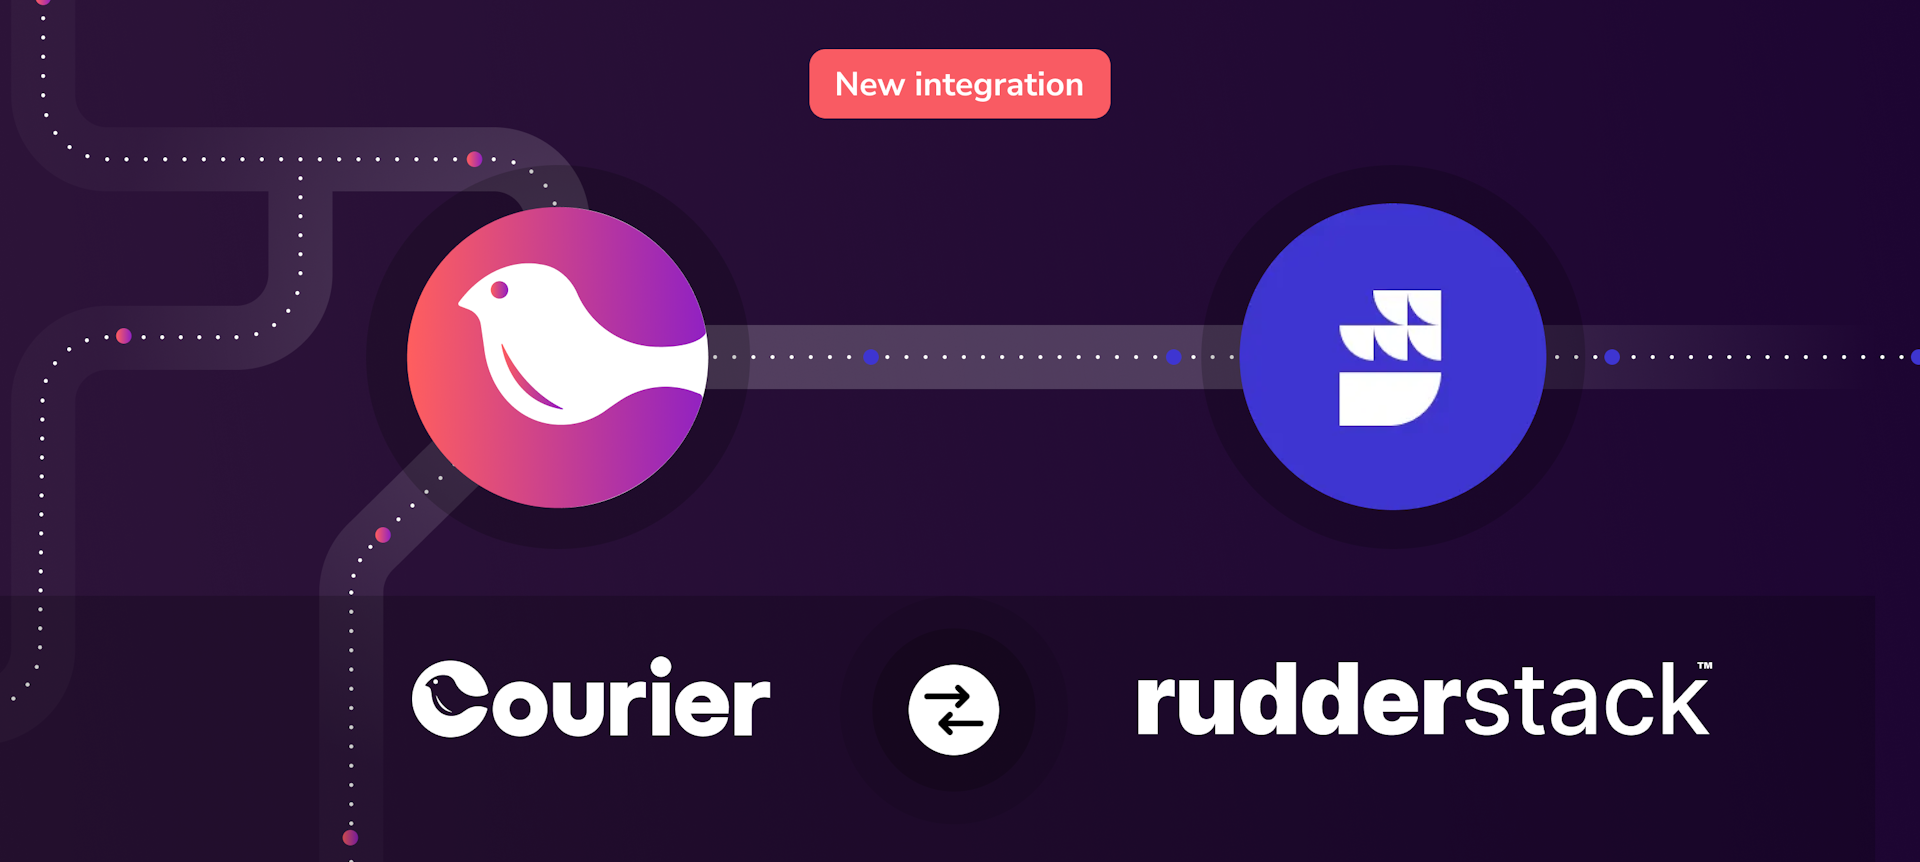 rudderstack-courier-integration